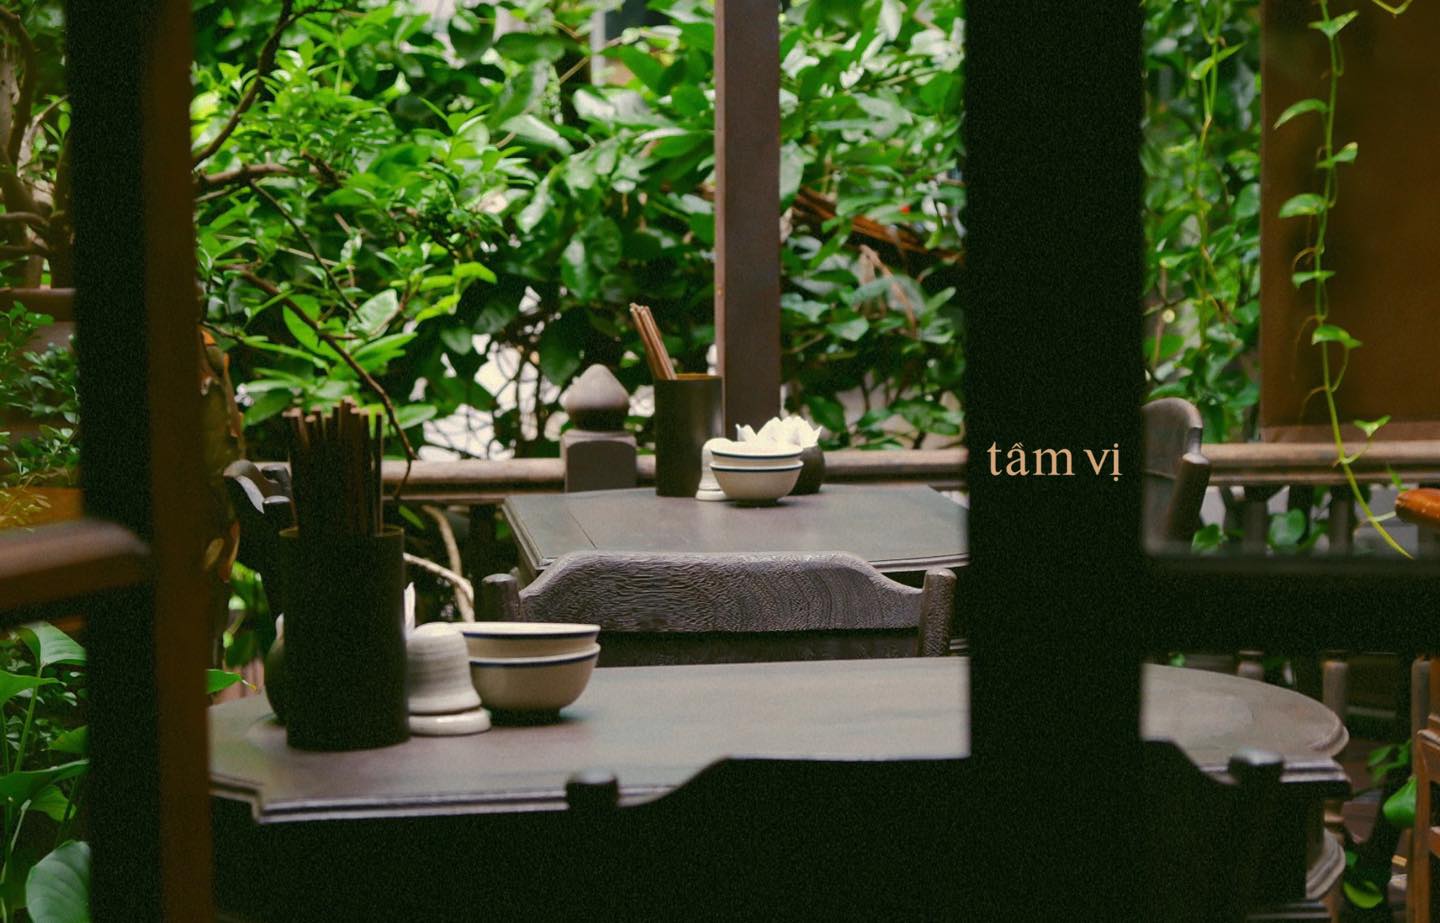 Tầm Vị - nơi lưu giữ những hương vị truyền thống của ẩm thực Việt